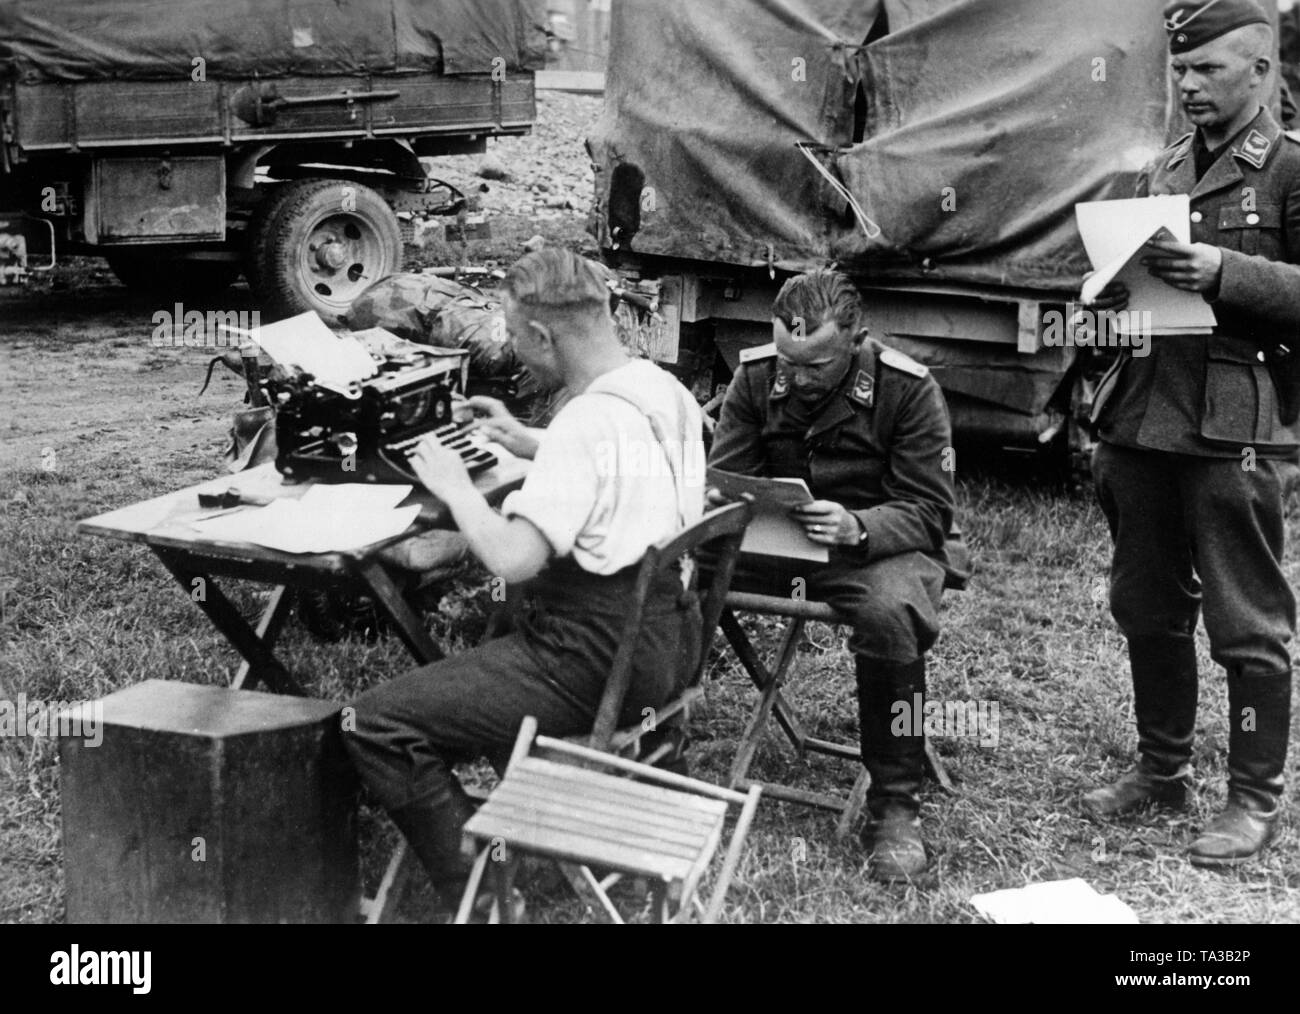 Les membres d'une unité de communication de la Wehrmacht sur le front de l'Est. Un soldat typs de commandes sur une machine à écrire. Deux officiers de la Luftwaffe dans le grade de lieutenant fournissent de l'information. Photo : Luden reporter de guerre. Banque D'Images